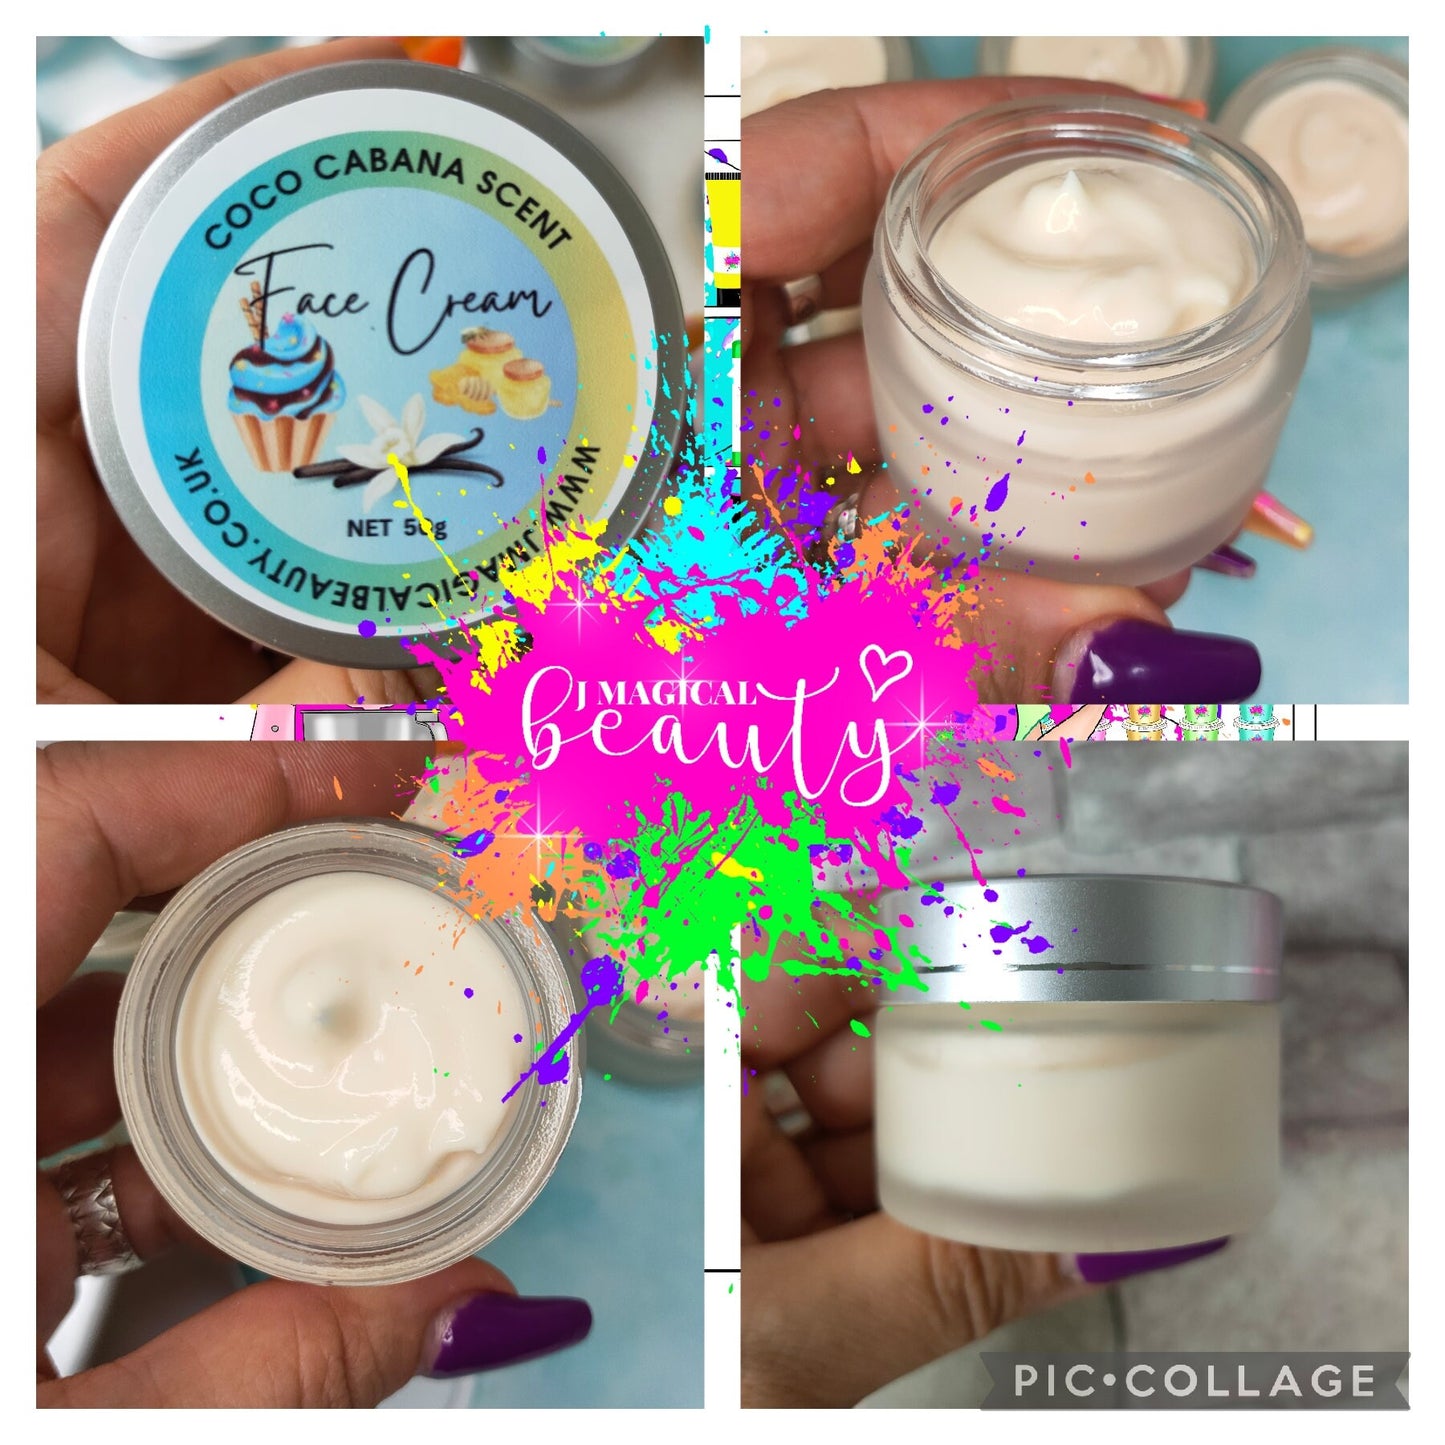 Face Cream Coco Cabana scent